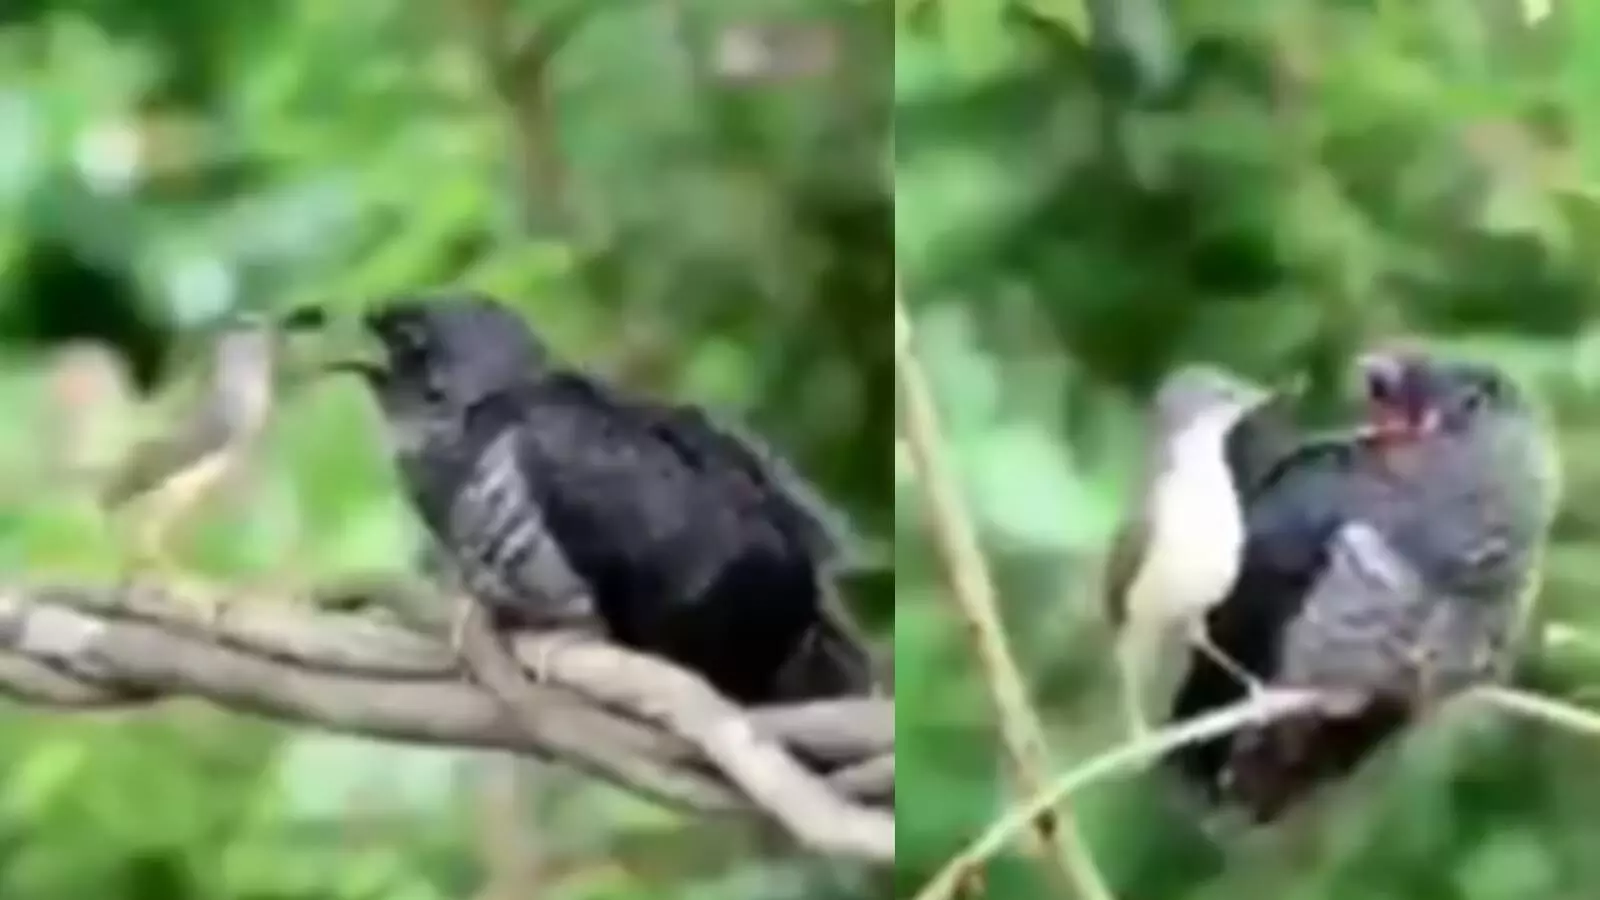 नन्हे पक्षी का बूढ़े पक्षी को खाना खिलाते वीडियो वायरल, यहां देखें